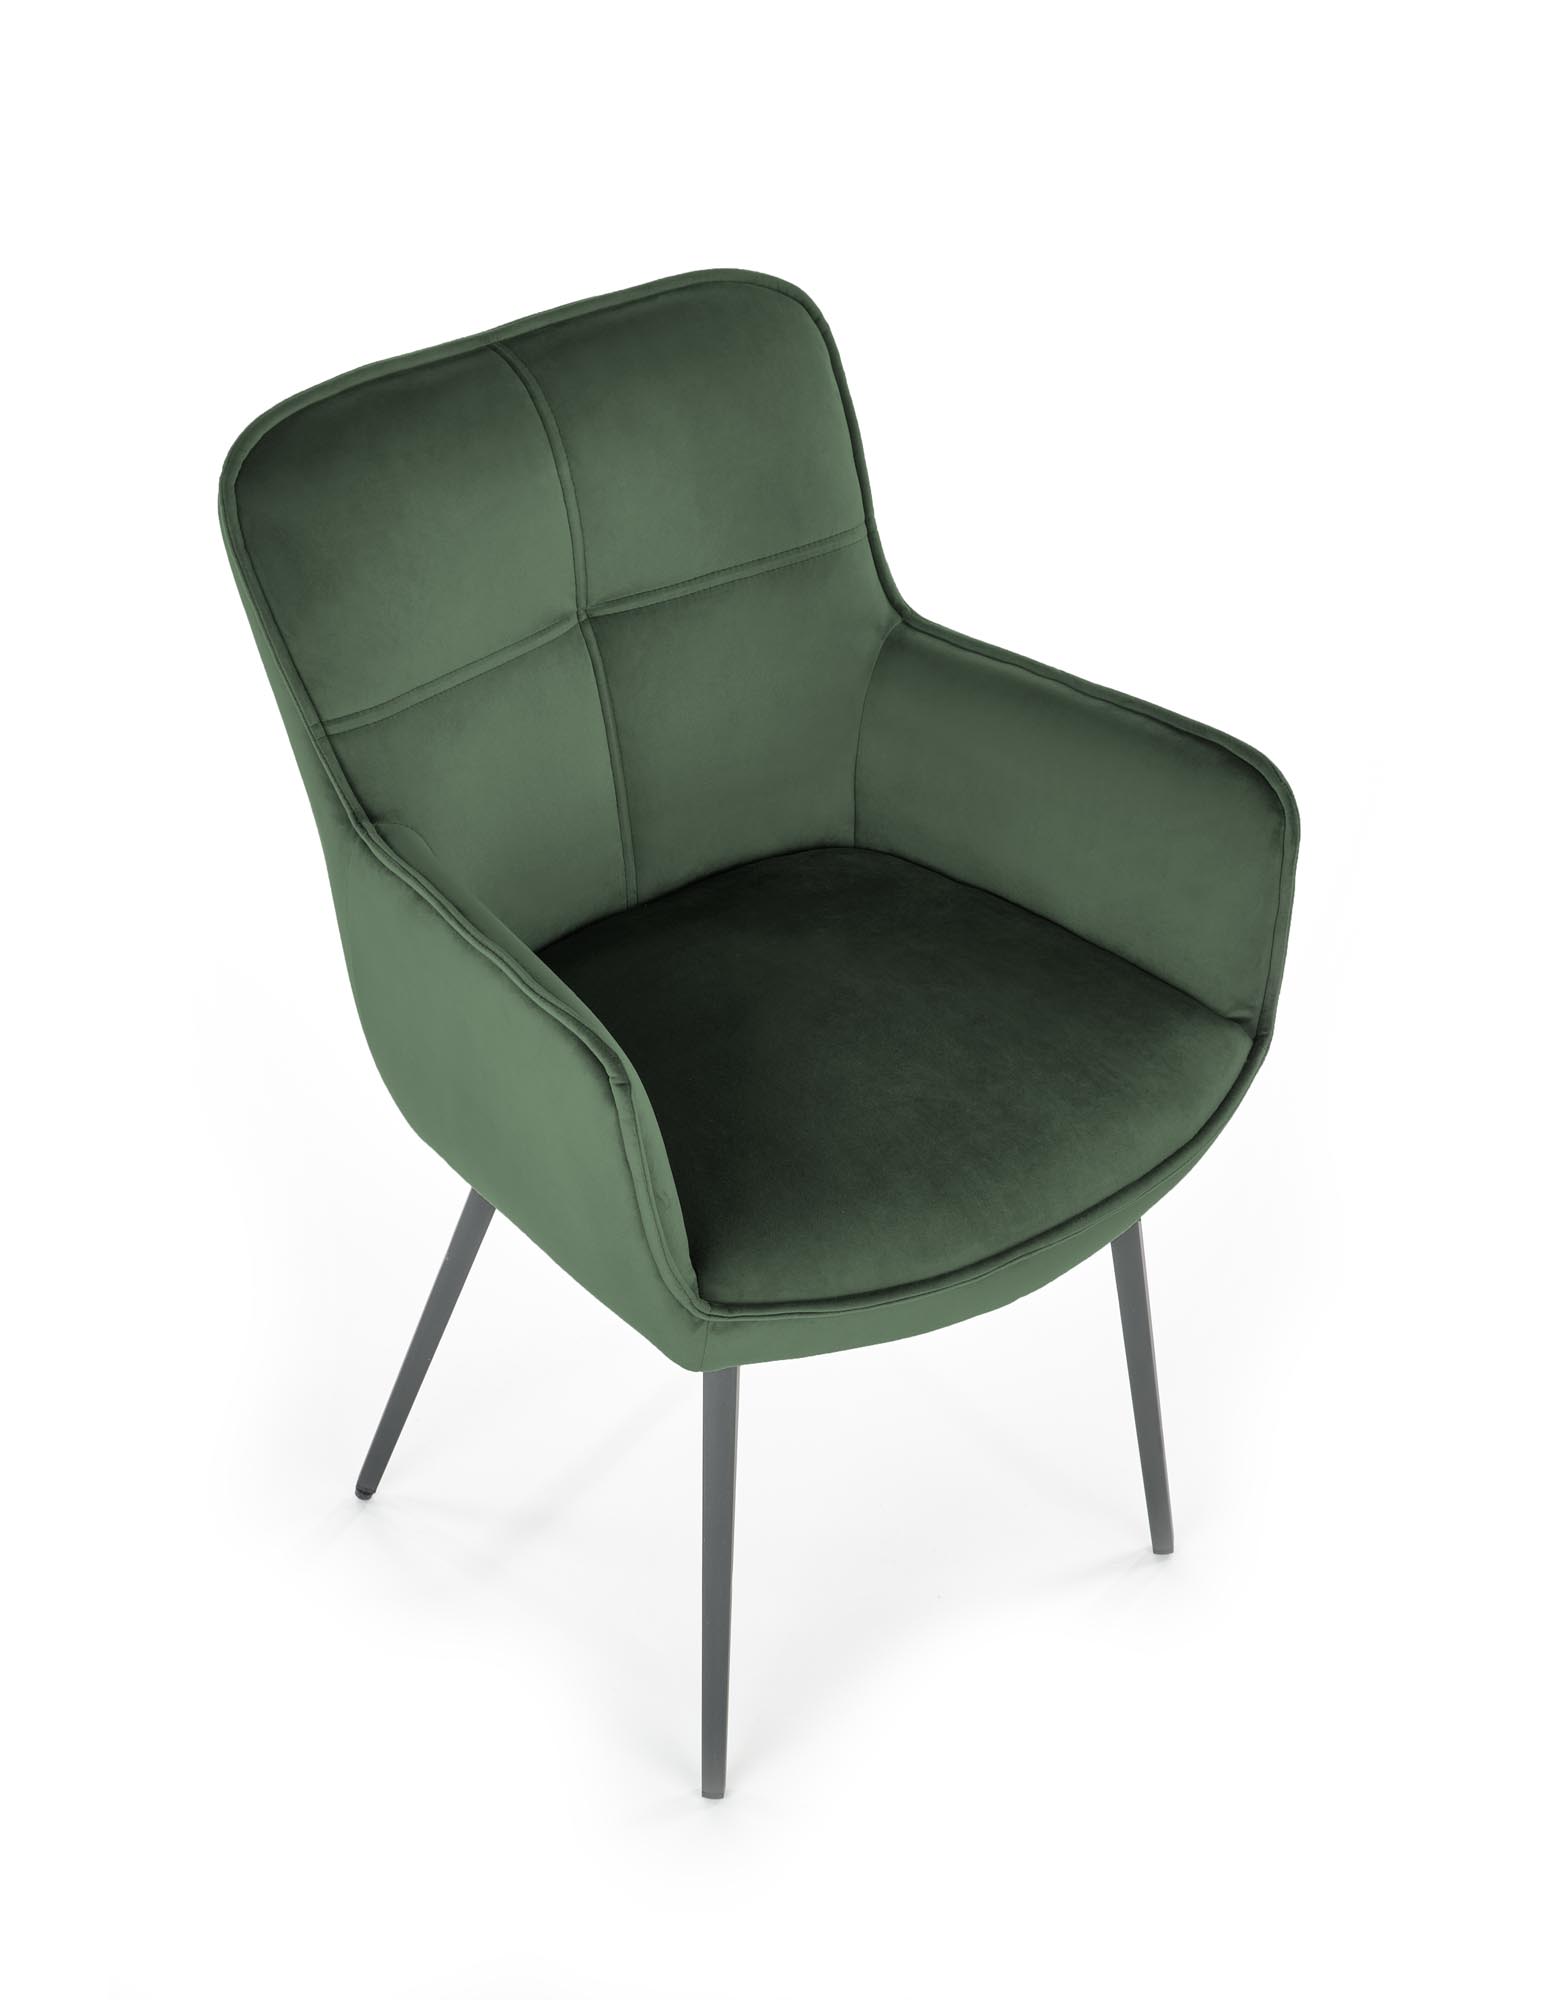 K463 Židle tmavý Zelený k463 Židle tmavý Zelený